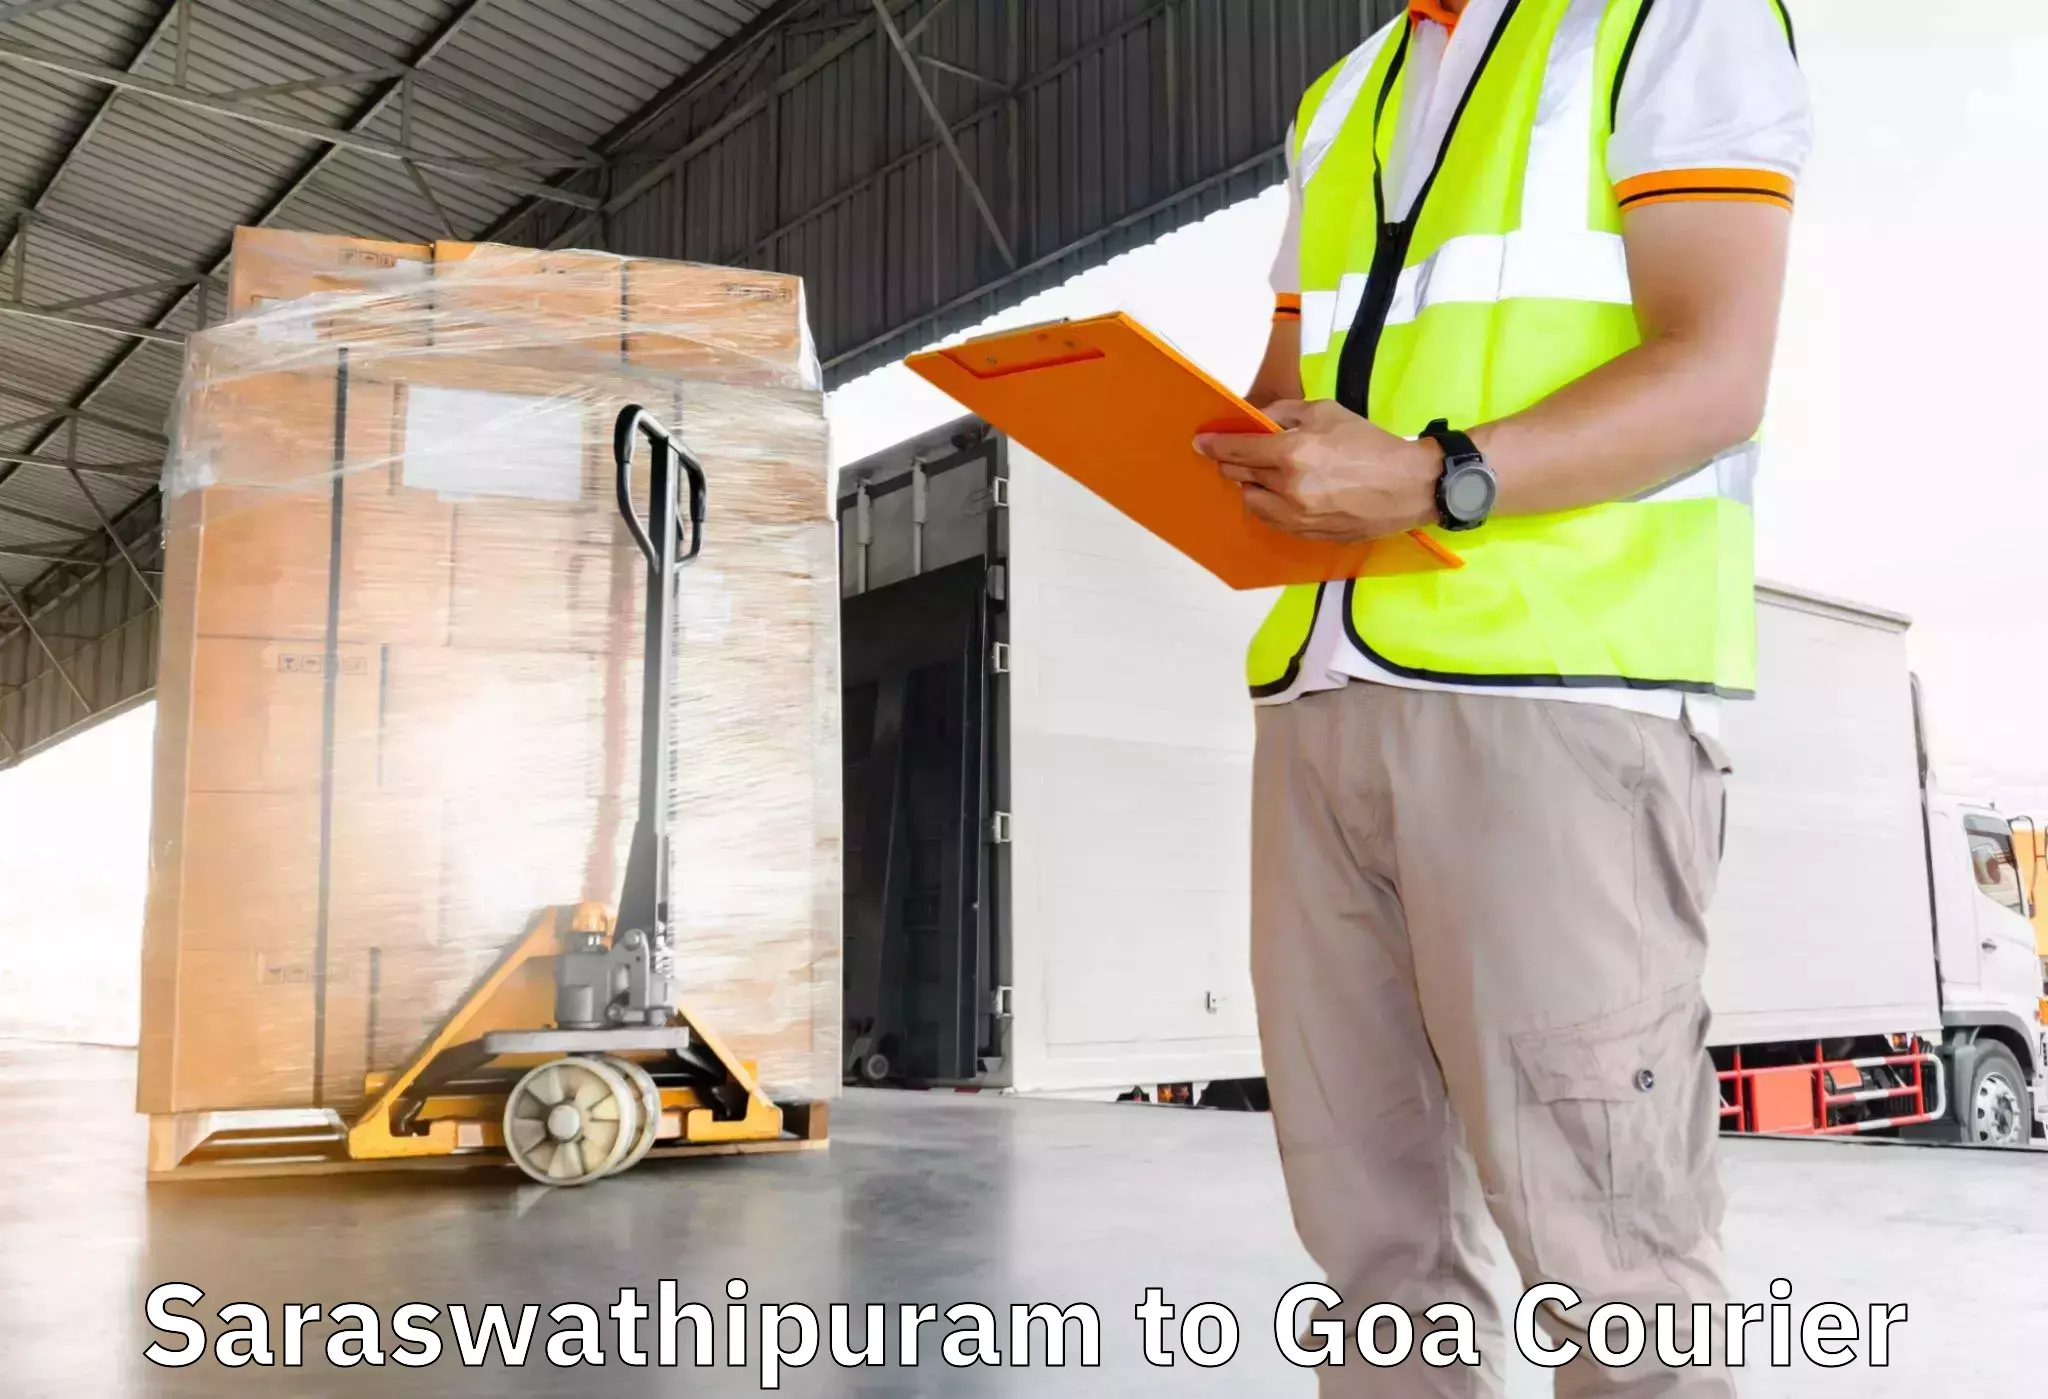 Furniture moving experts Saraswathipuram to Canacona